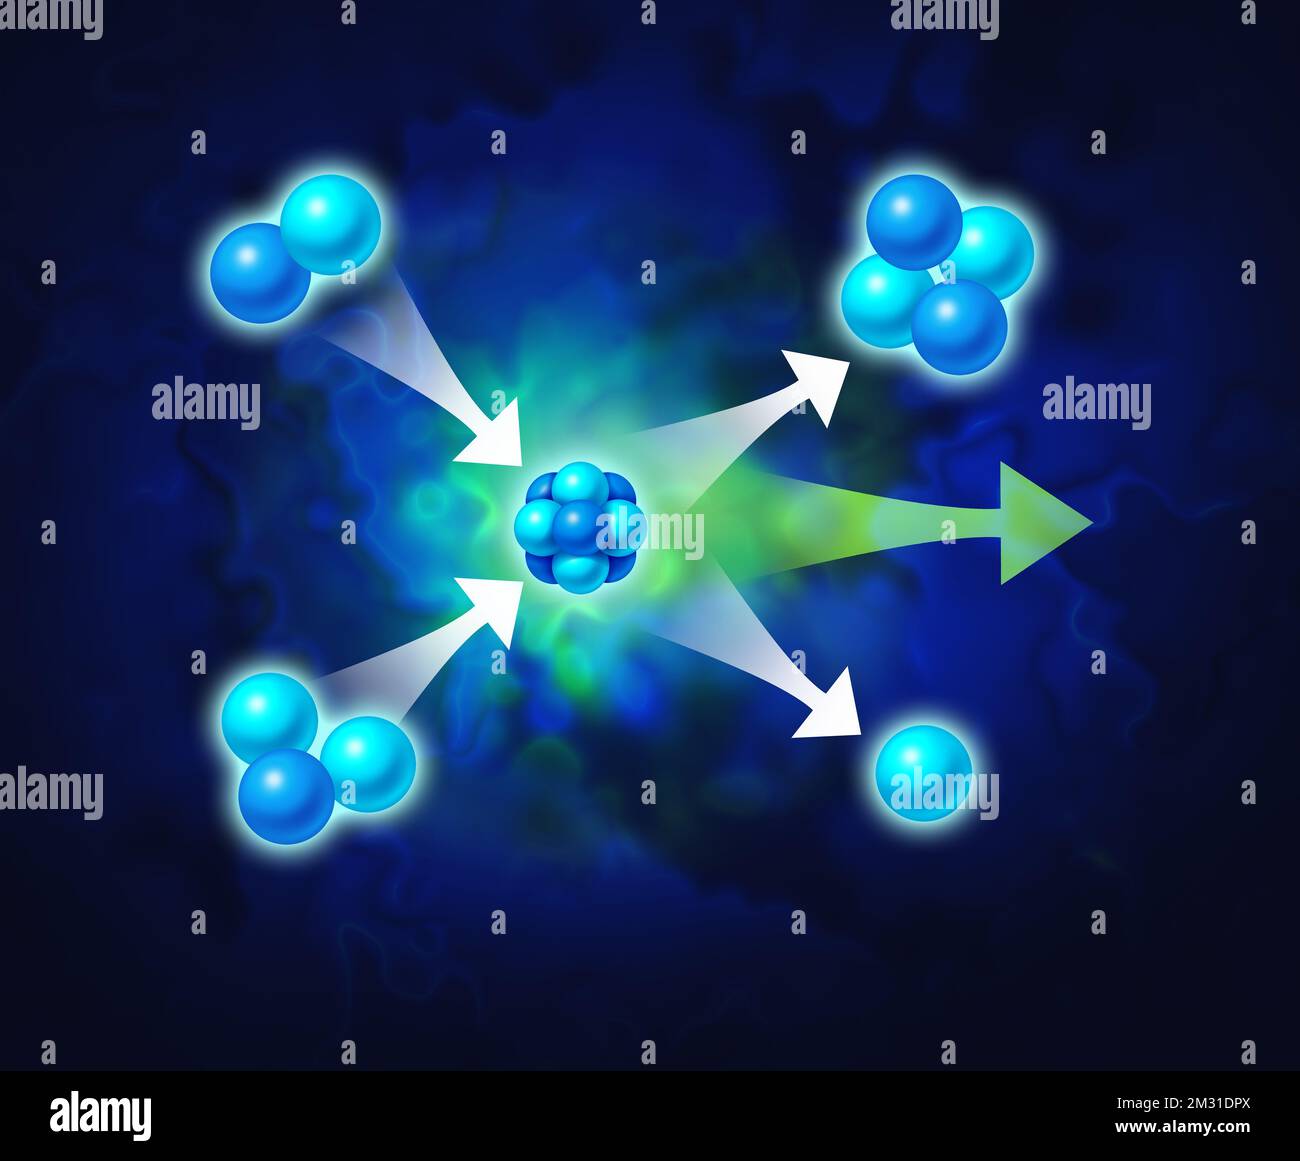 Concetto di energia di fusione e fisica di generazione di energia nucleare simbolo di scienza come forme astratte che rappresentano elementi concettuali microscopici con elio Foto Stock